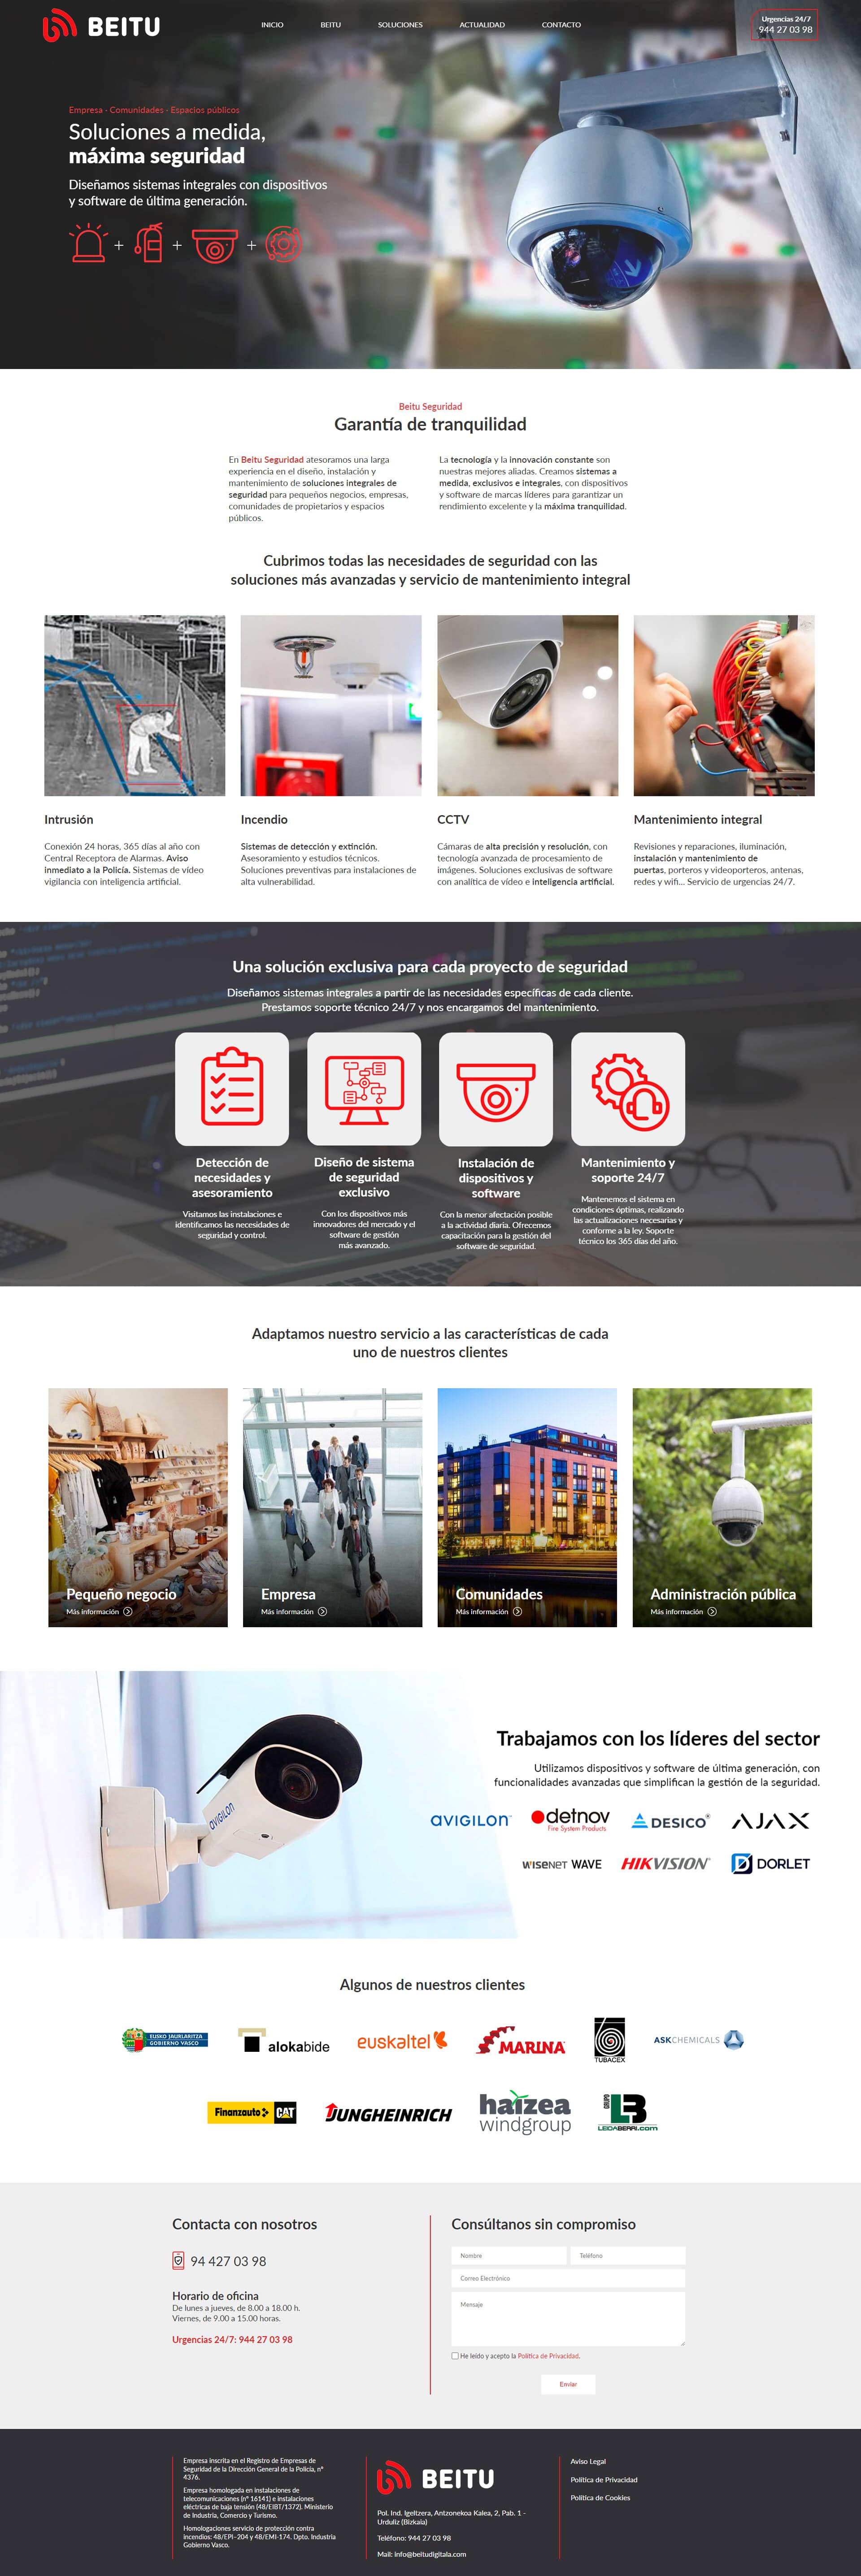 Diseño web de Beitu digitala